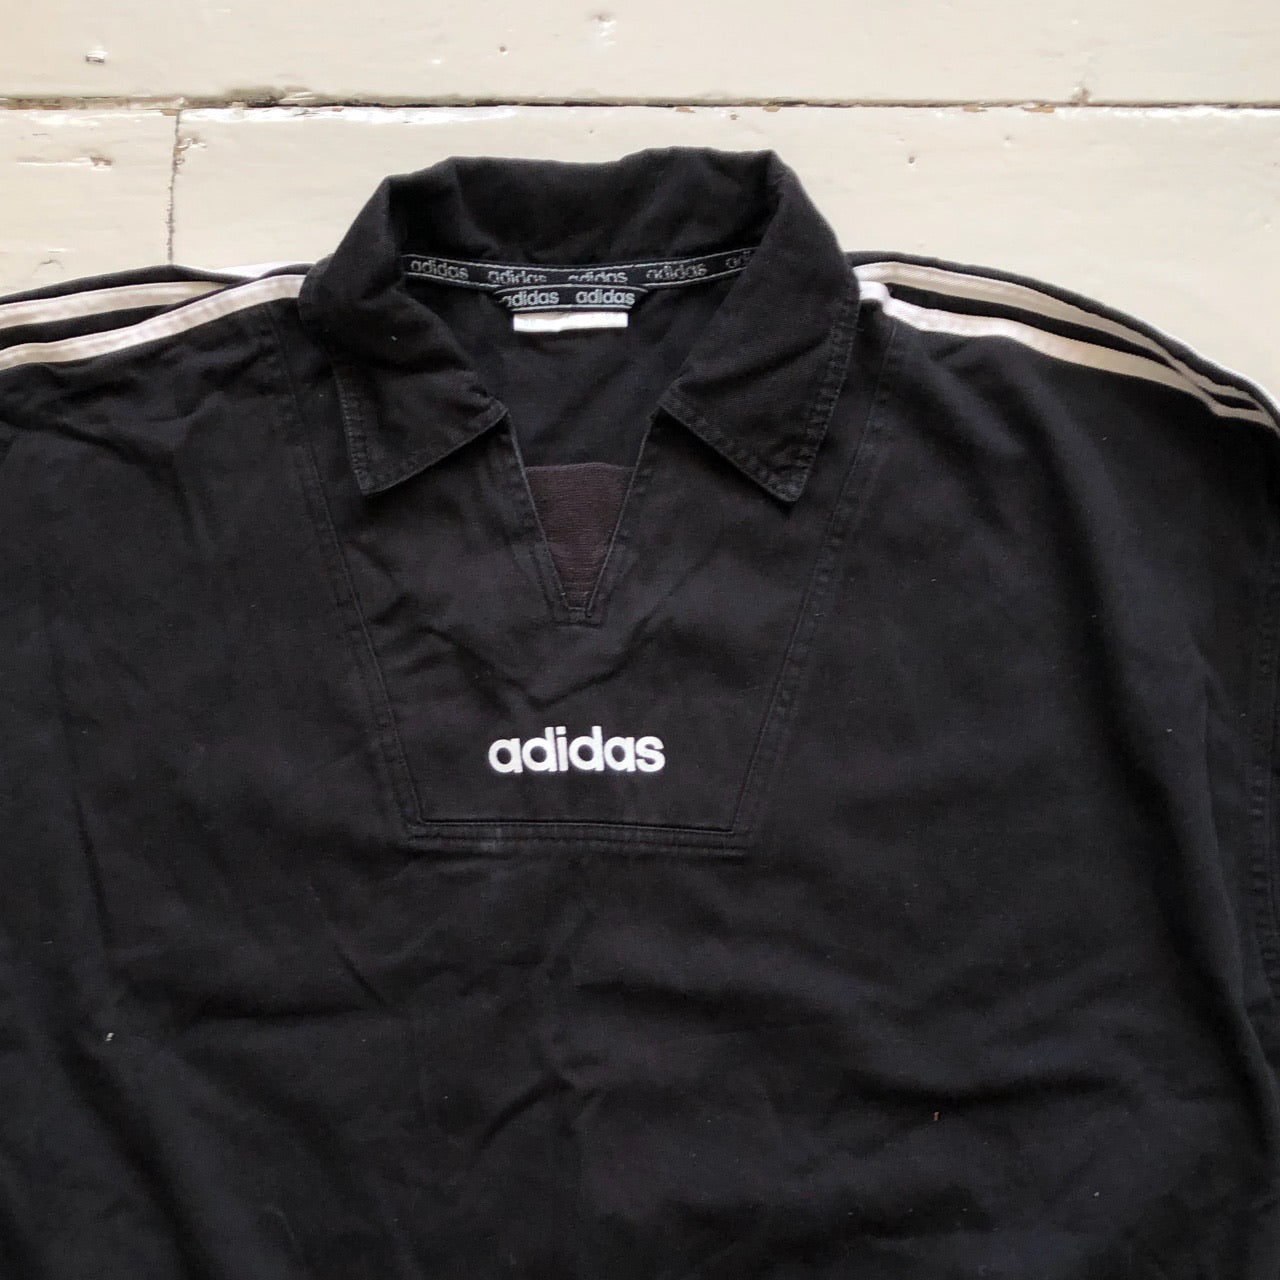 Adidas Originals Vintage 80’s Pullover (XL)